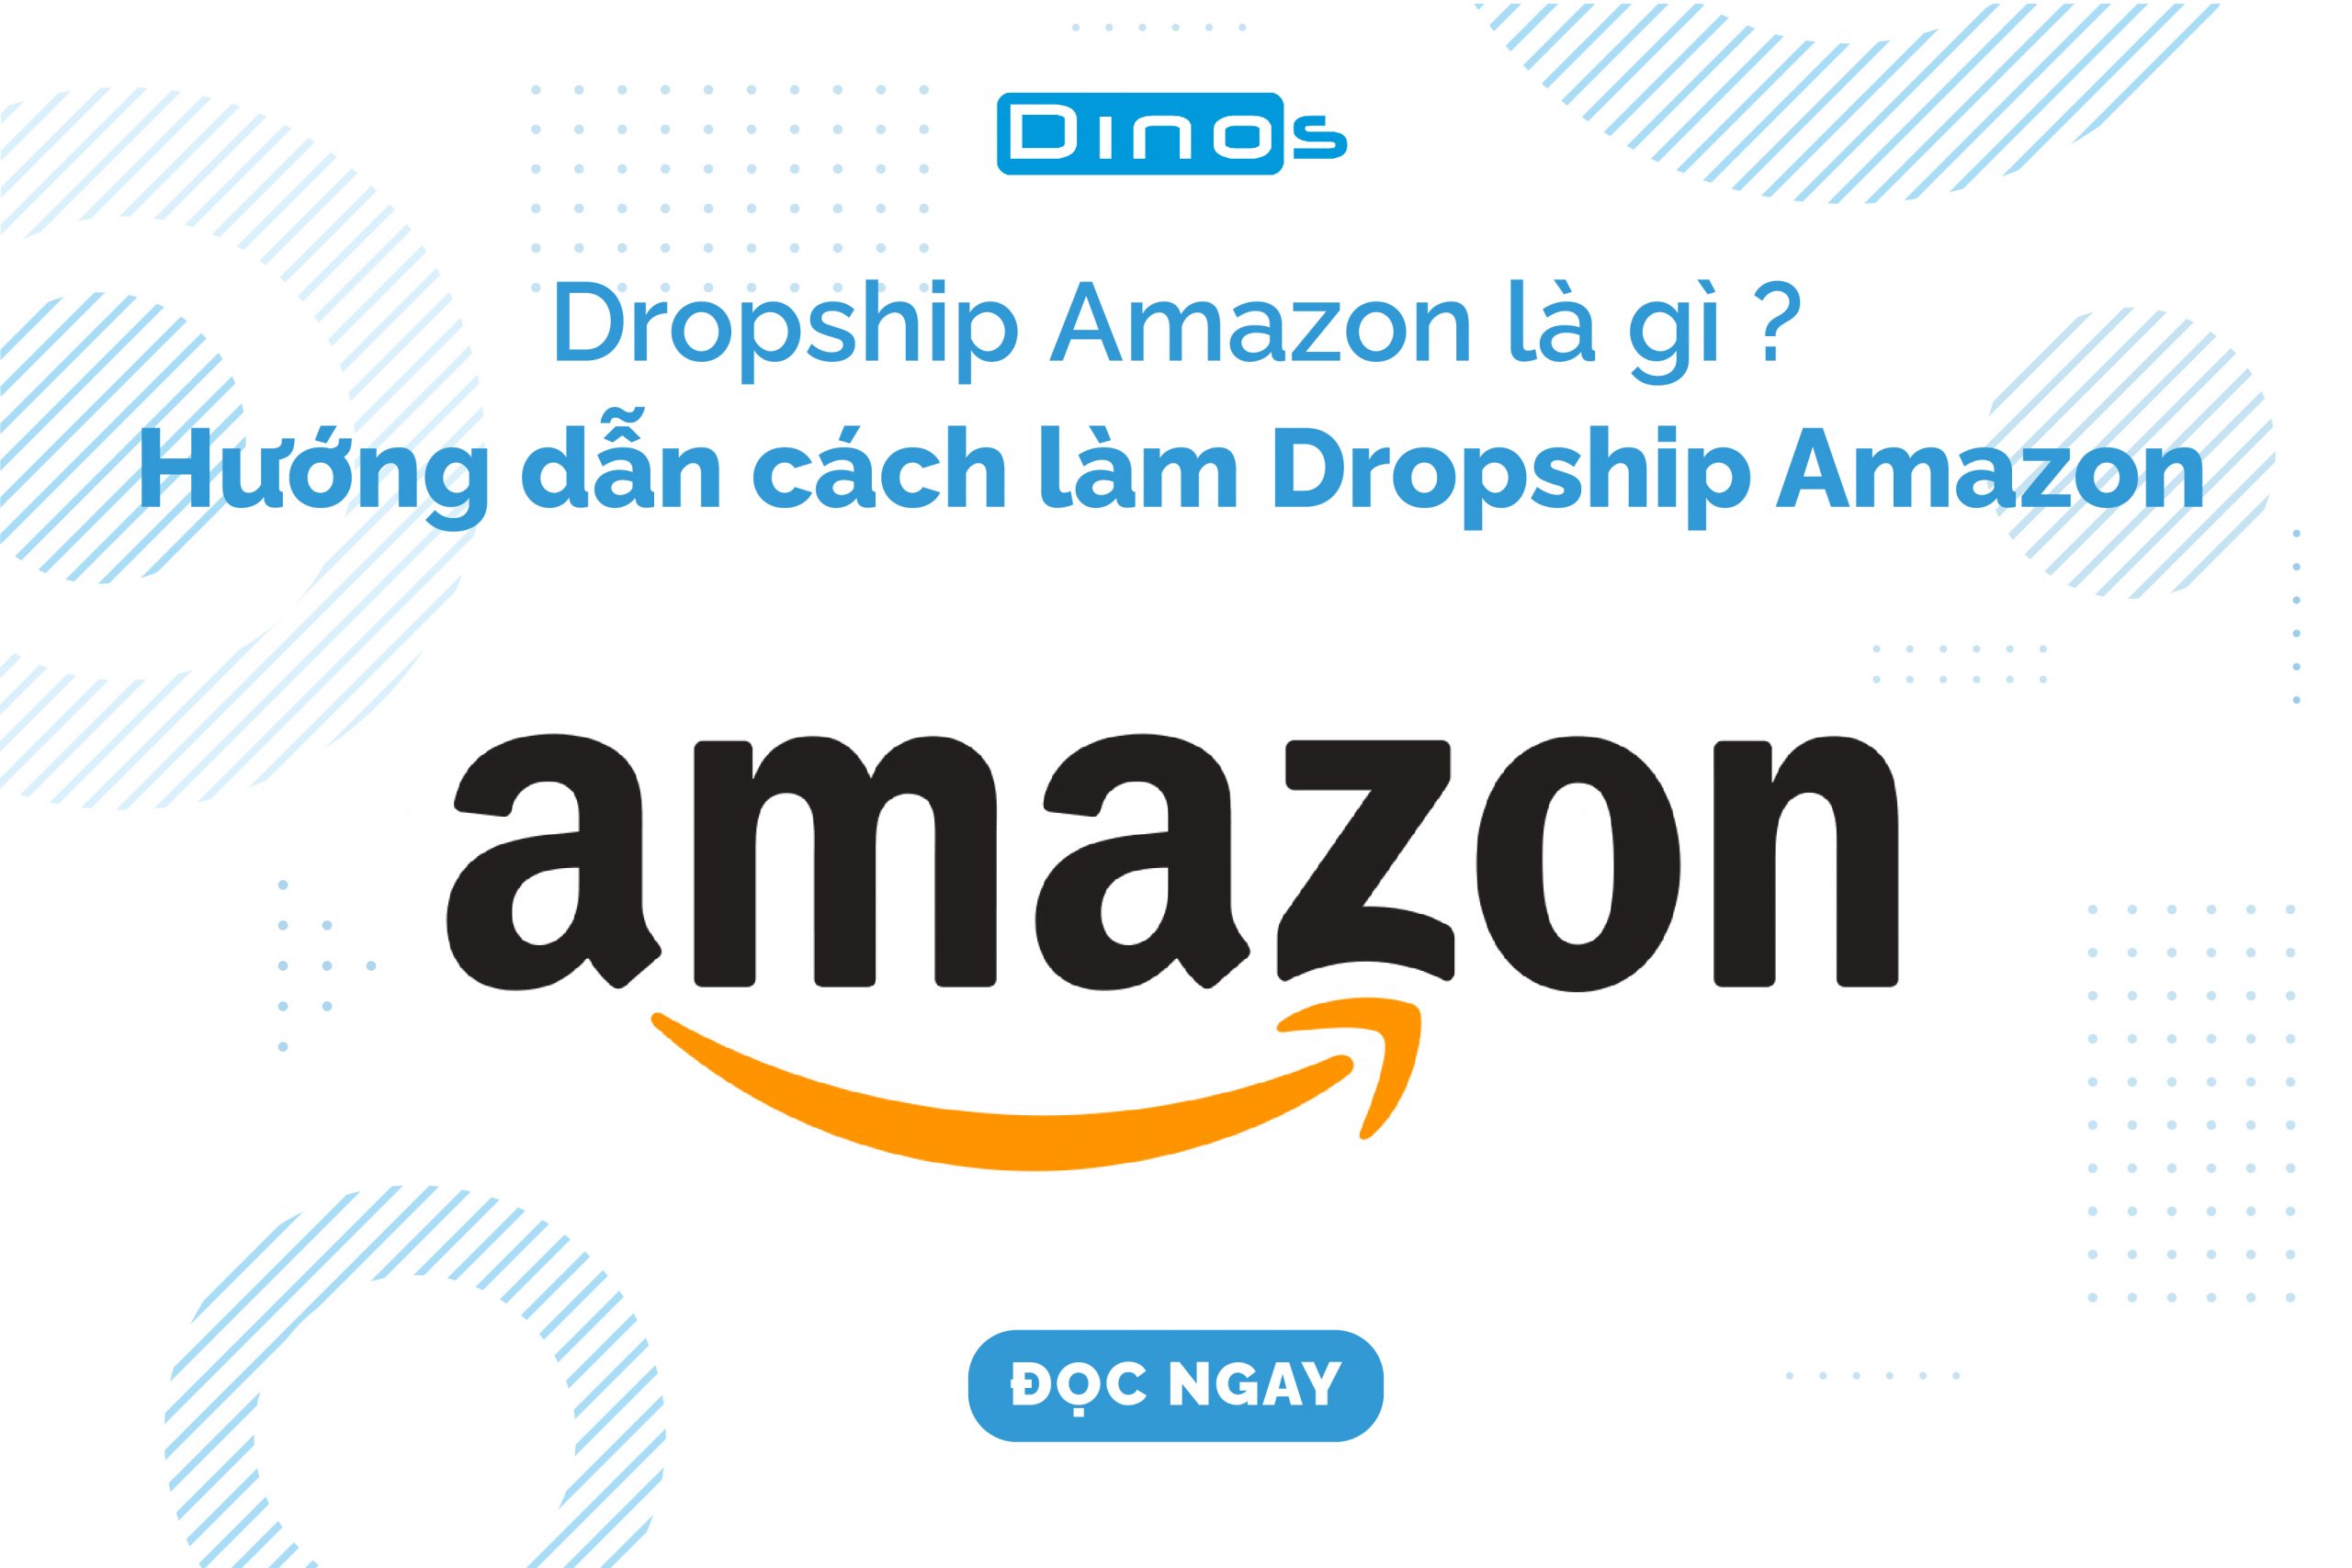 Dropship Amazon là gì ? Hướng dẫn cách làm Dropship Amazon